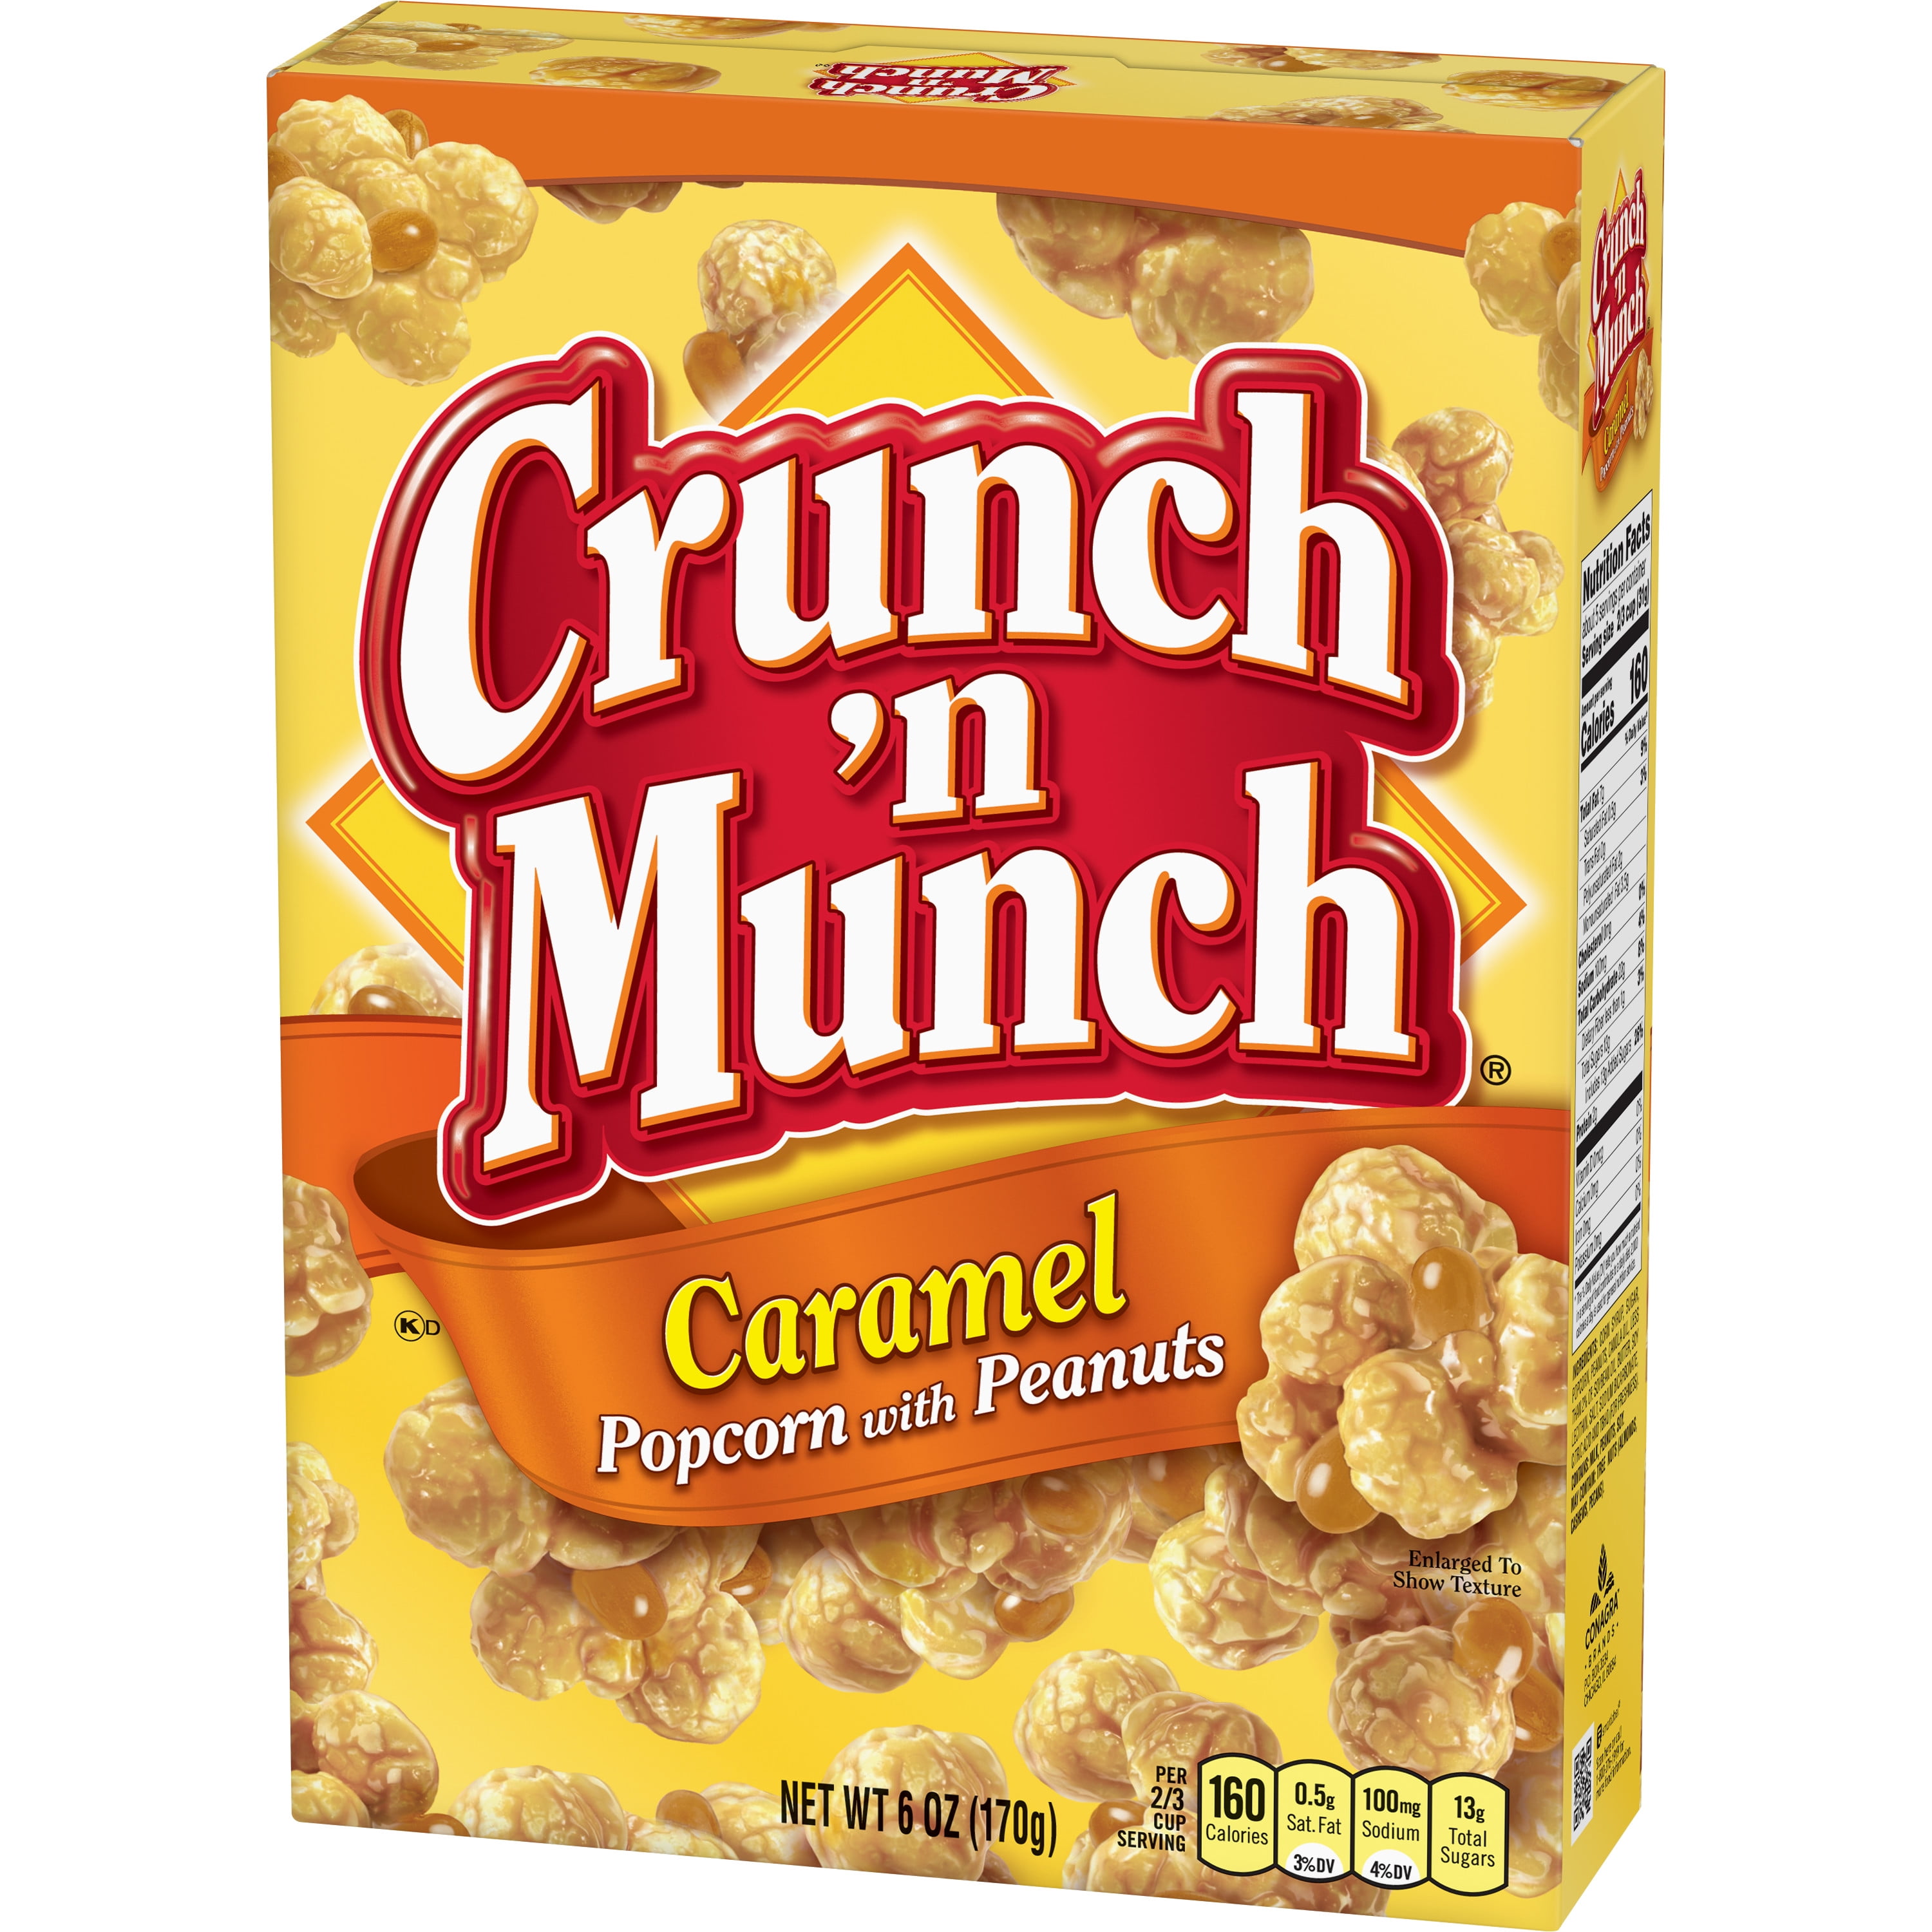 CRUNCH 'N MUNCH Caramel Popcorn with Peanuts, 6 oz.